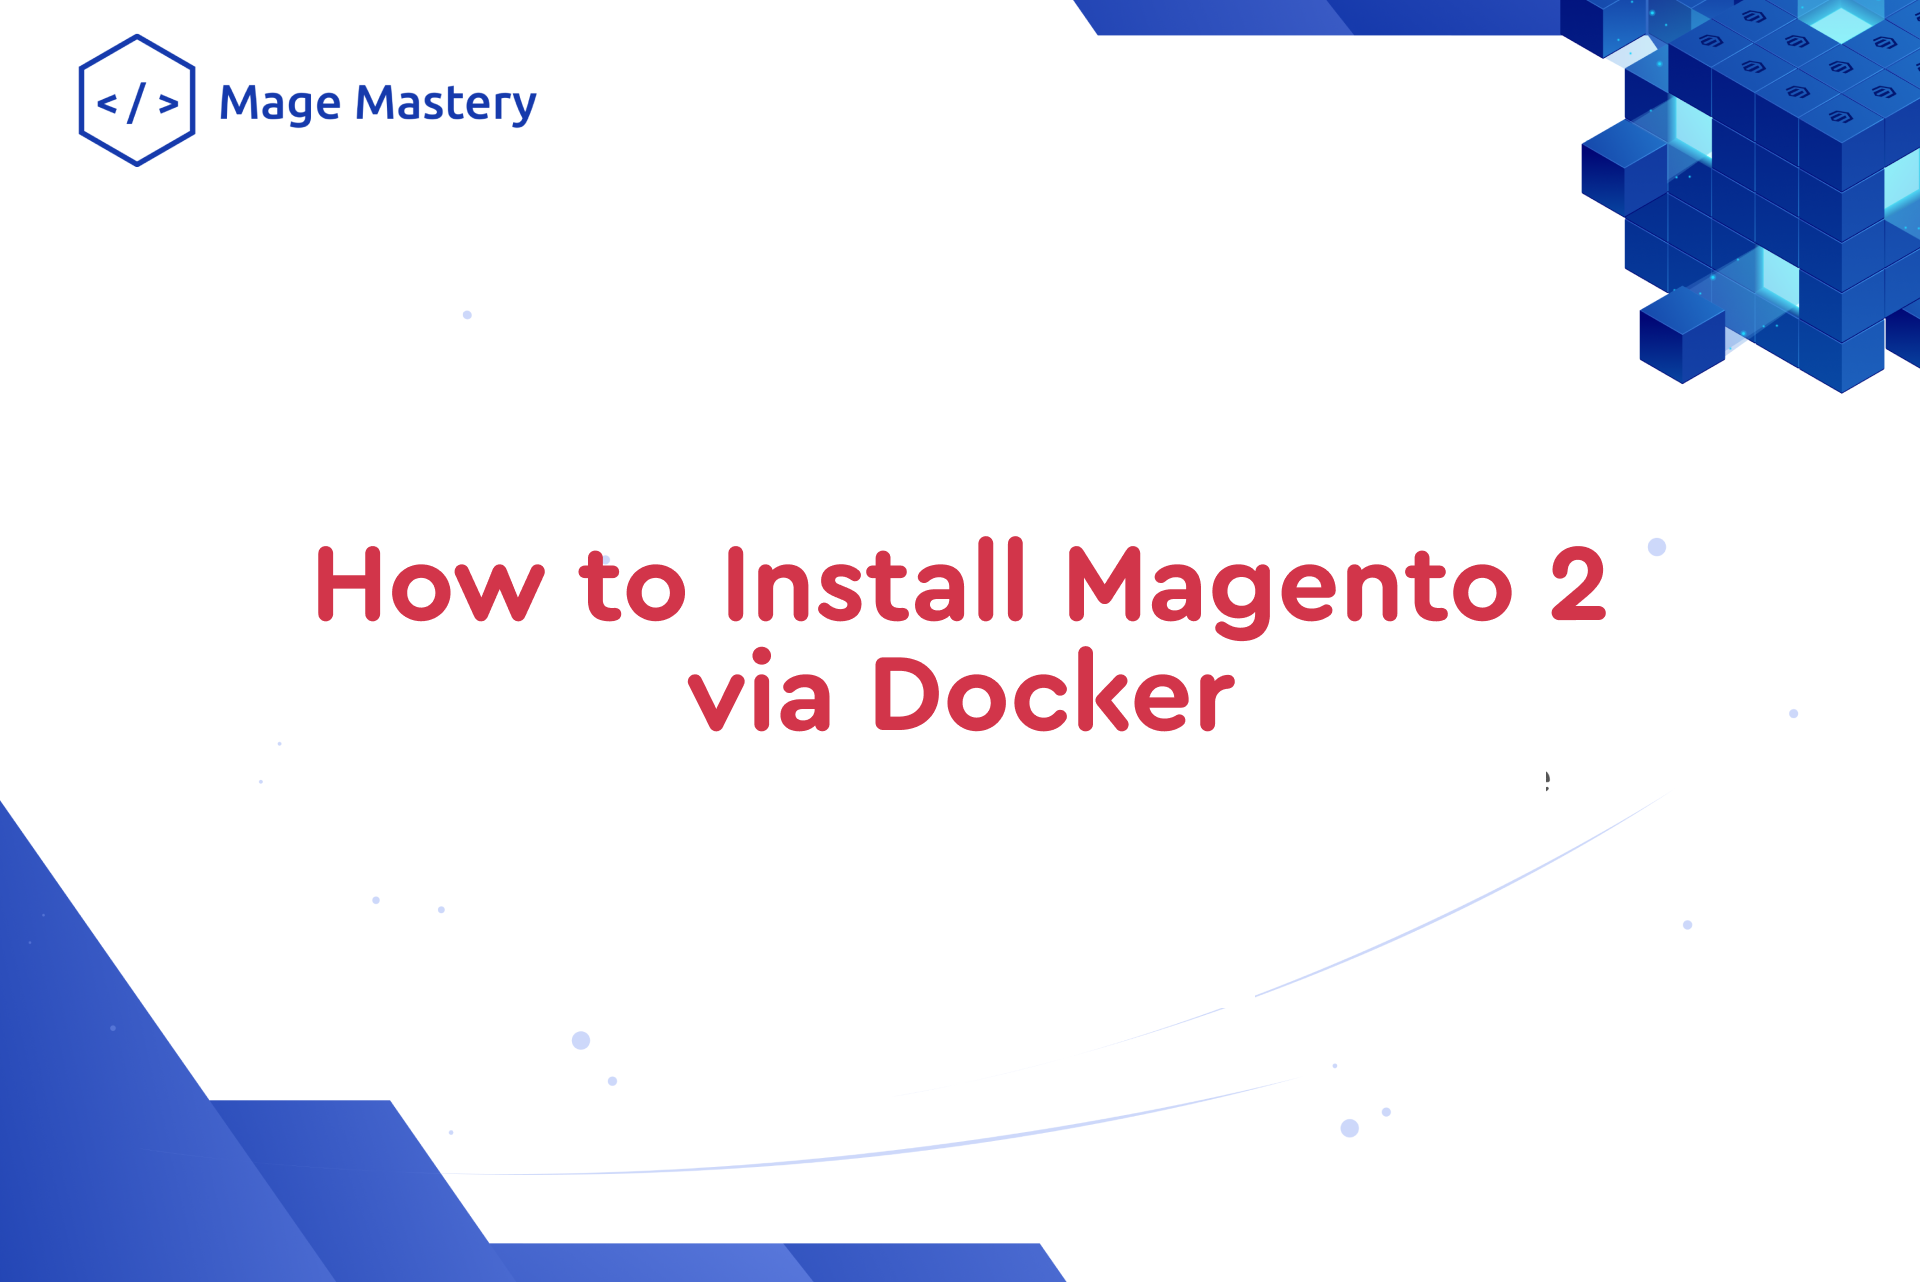 [Video] How to Install Magento 2 via Docker